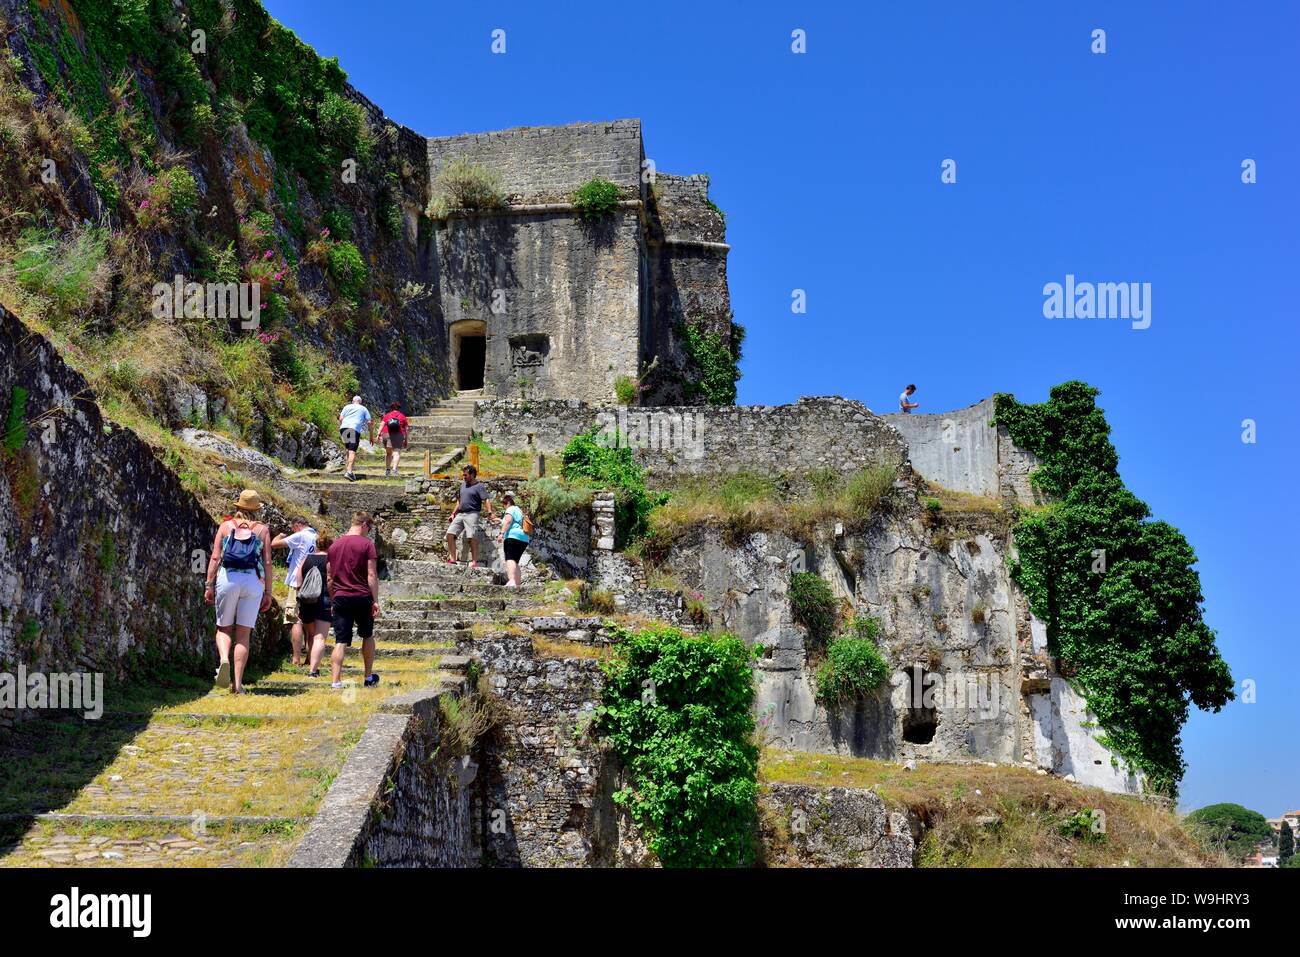 Los turistas paseando por la antigua fortaleza,Kerkyra, Corfú, Grecia, Islas Jónicas Foto de stock